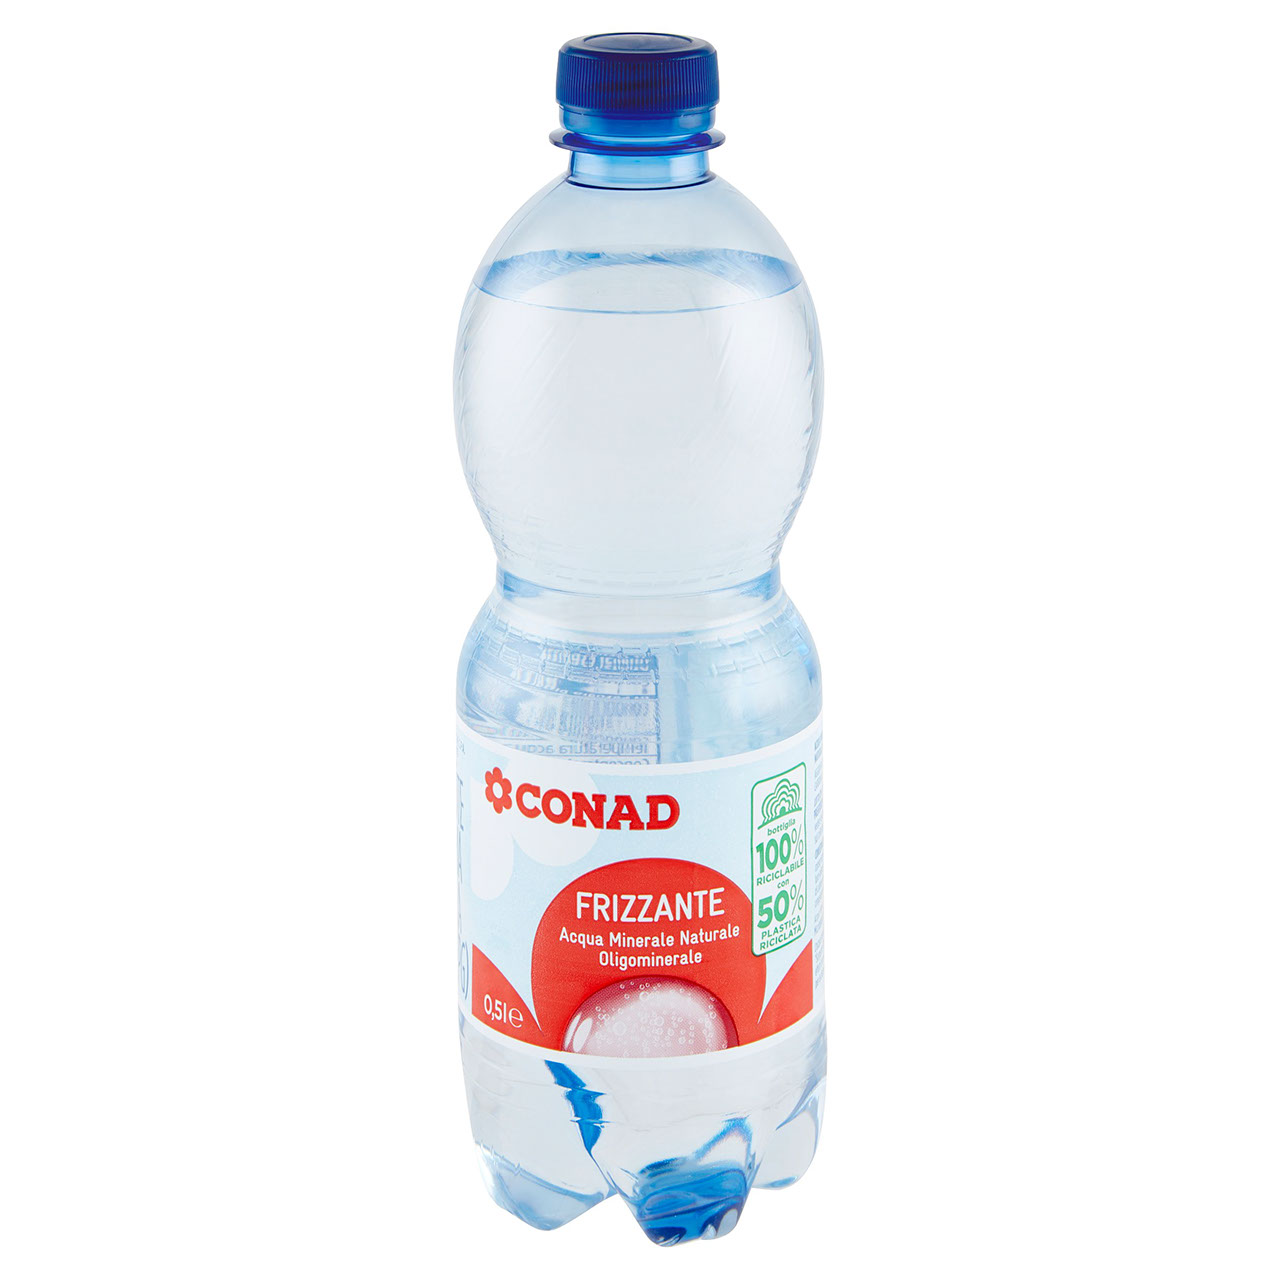 Acqua Minerale Naturale Frizzante 0,5 l Conad